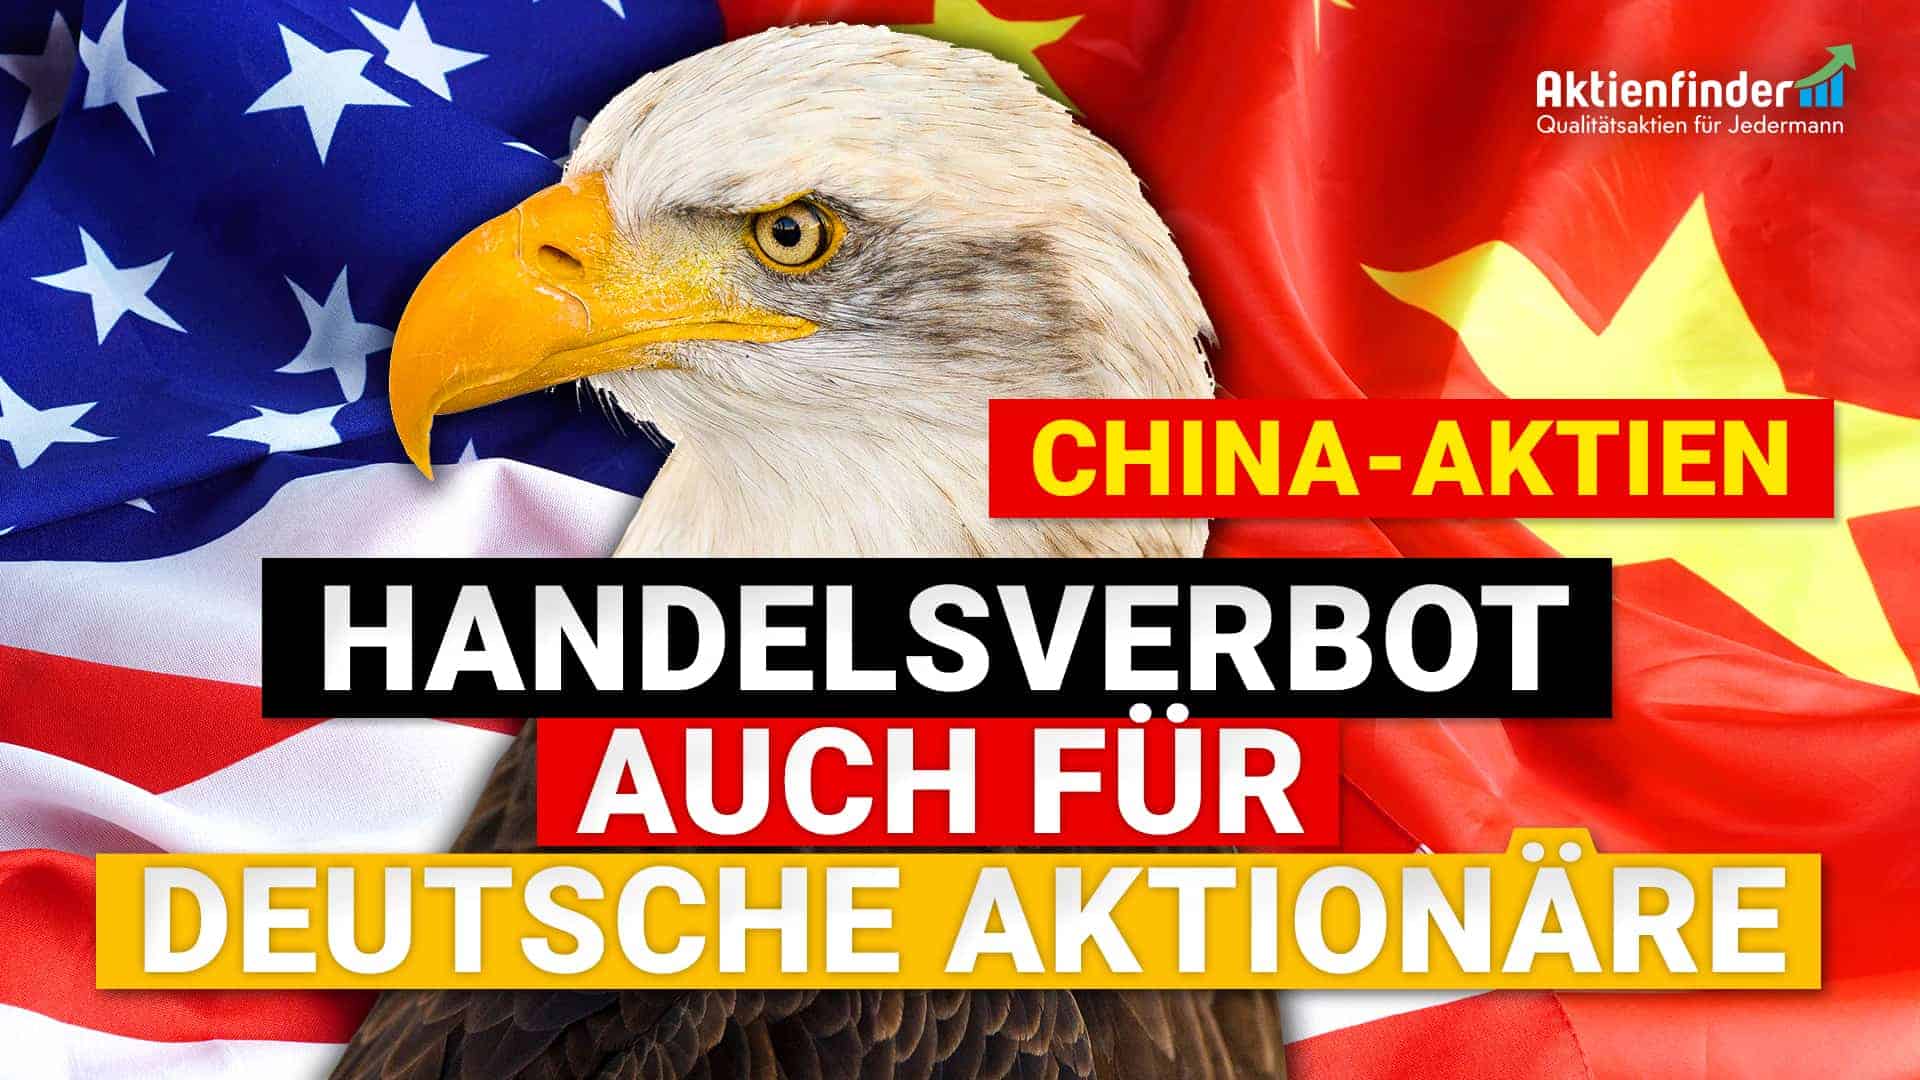 China Aktien - Handelsverbot auch für deutsche Aktionäre